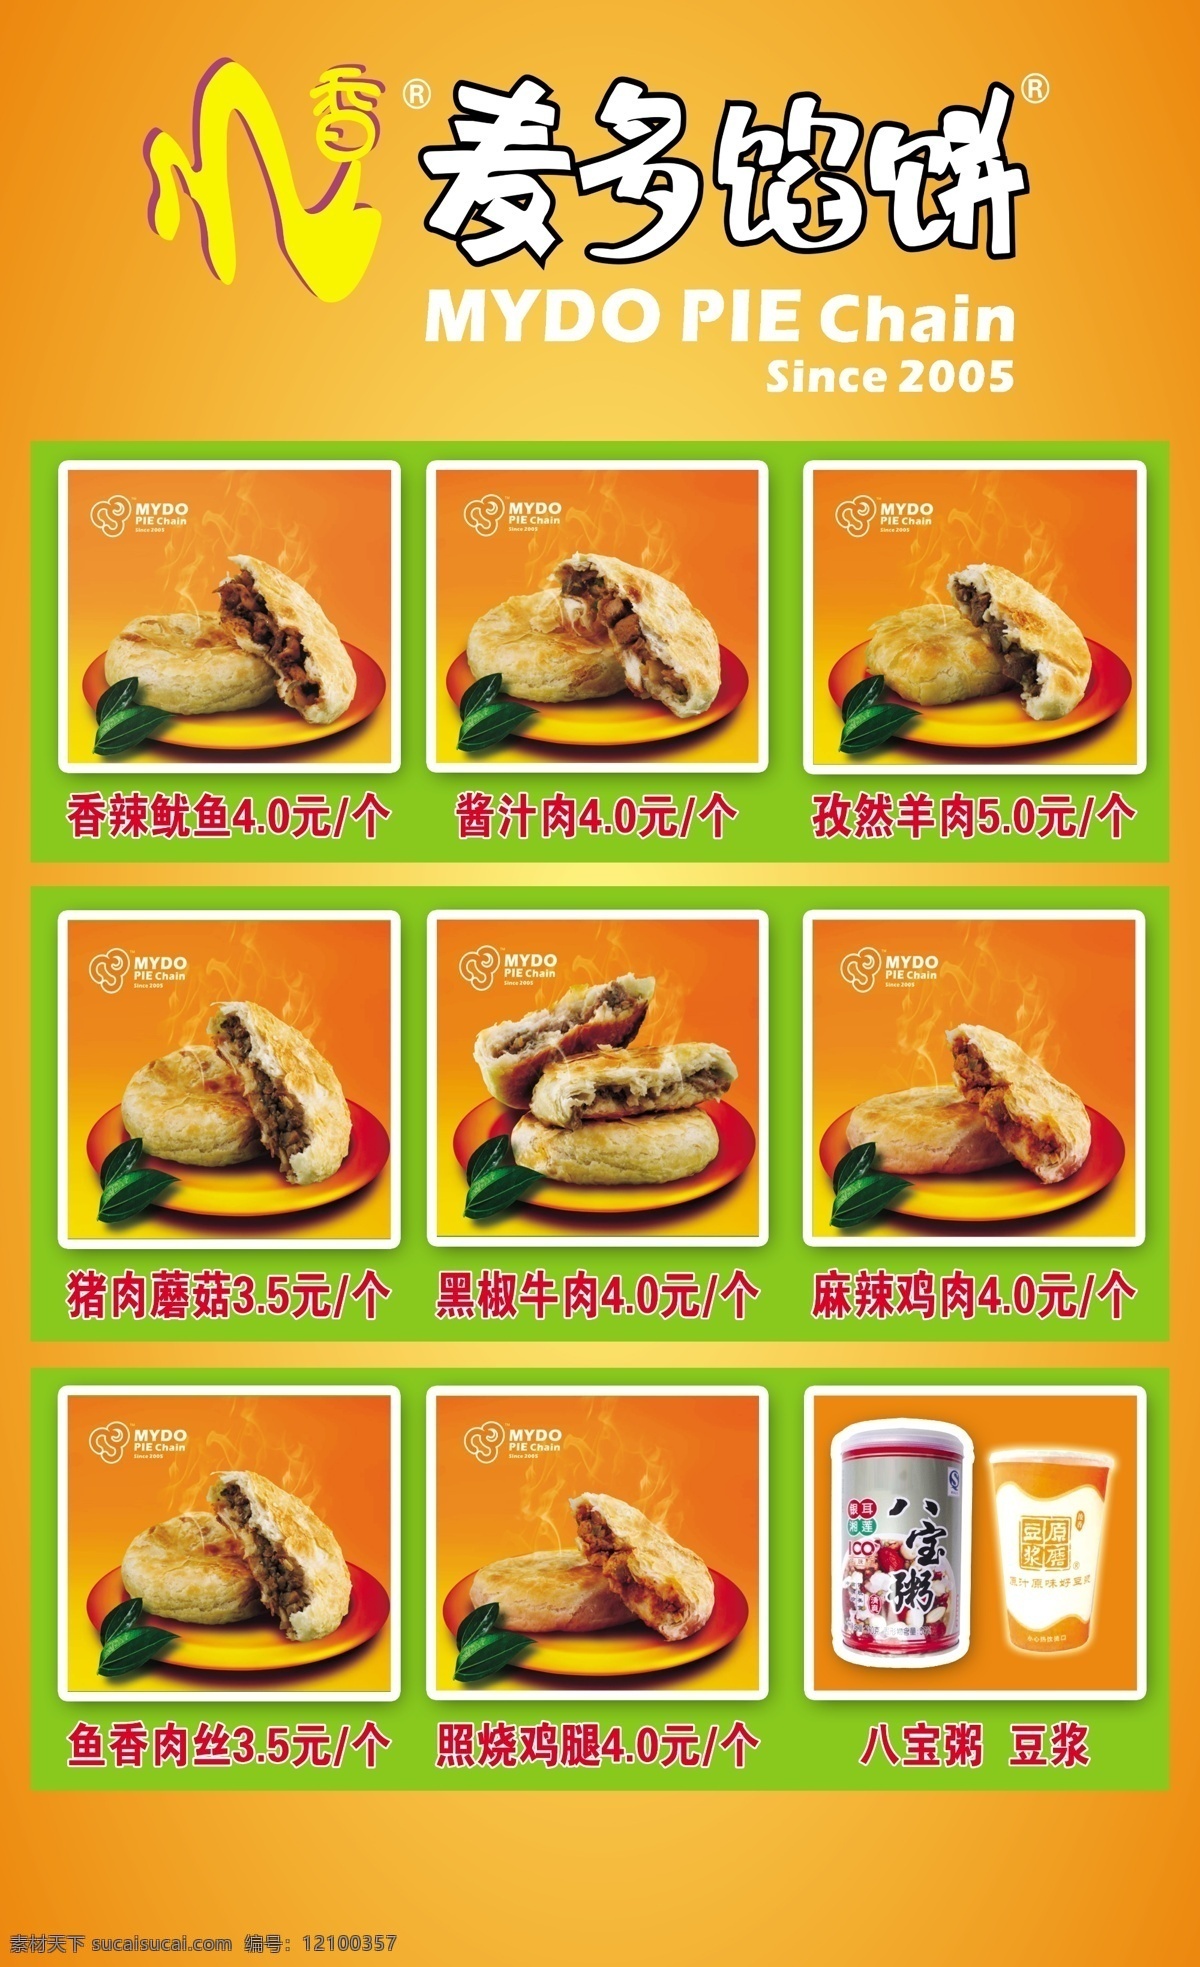 麦多馅饼 logo 桔红色 馅饼 豆浆 广告设计模板 源文件